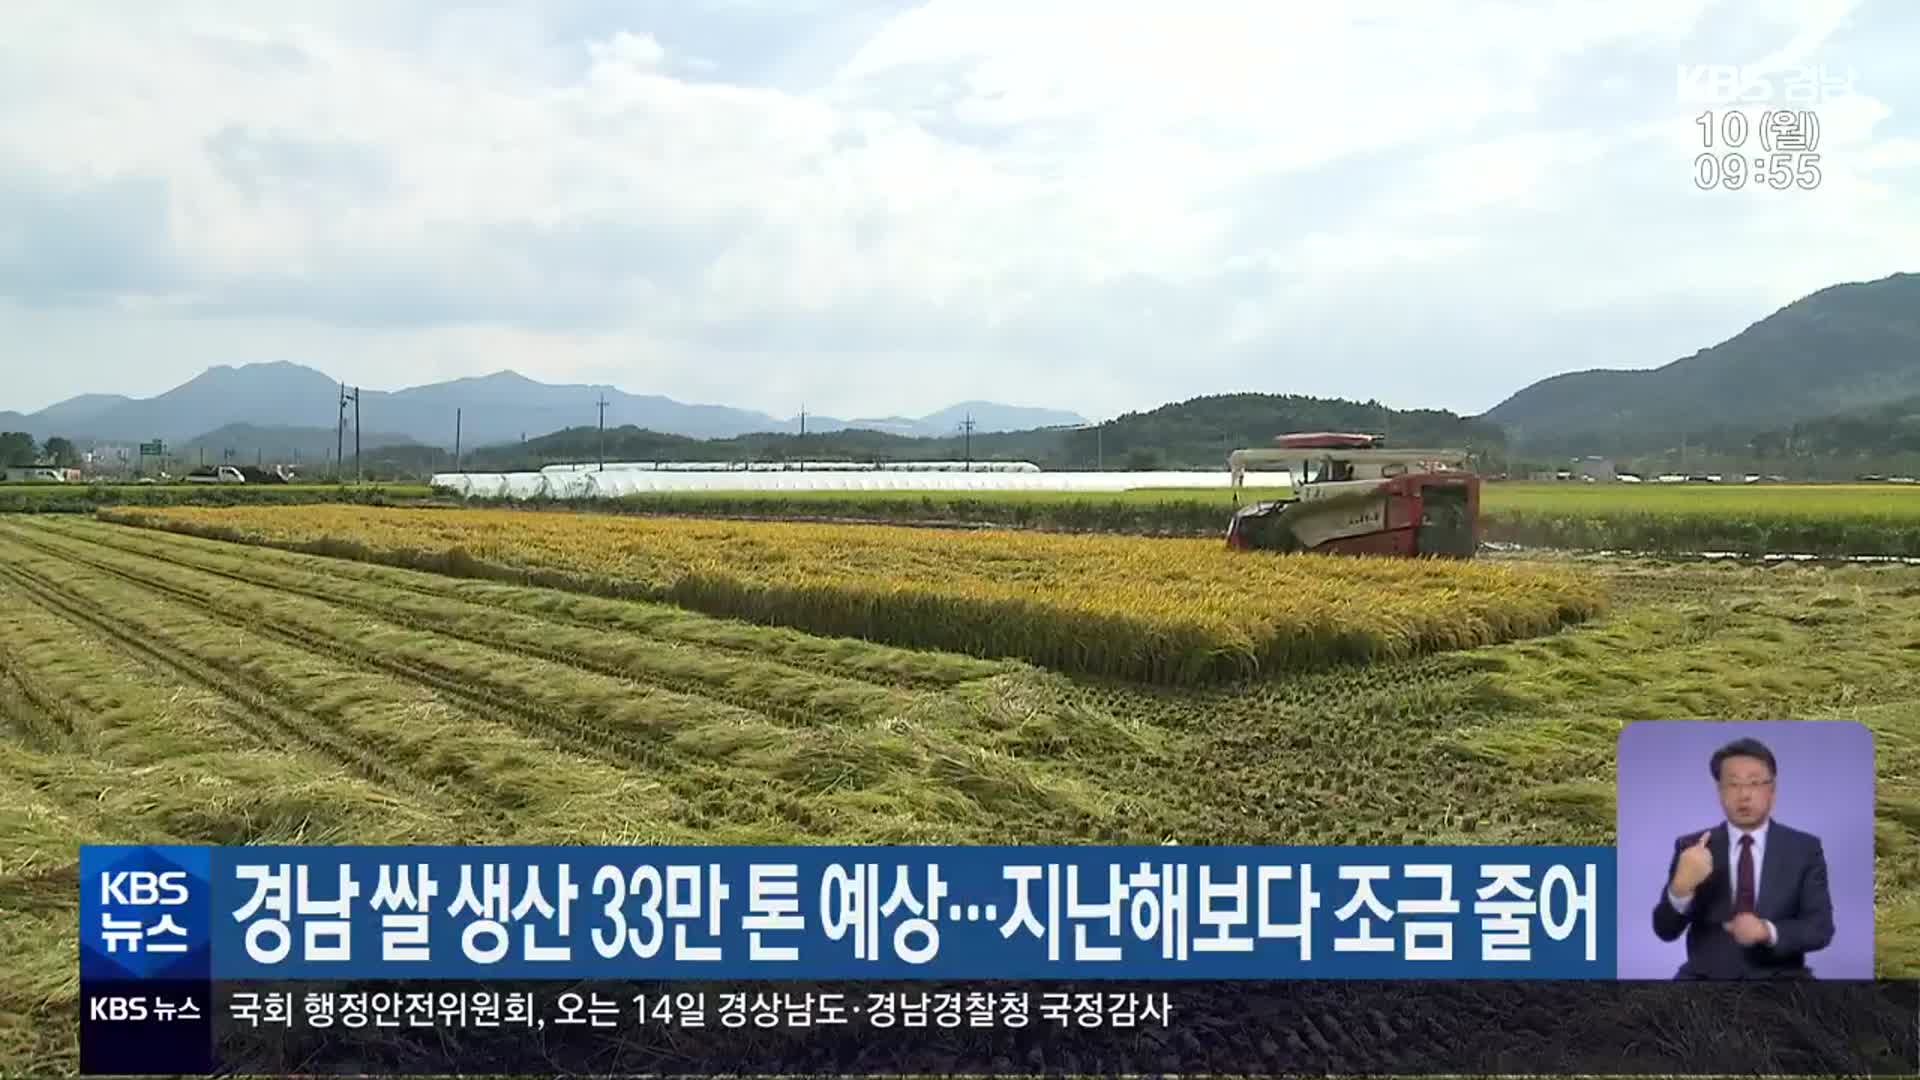 경남 쌀 생산 33만 톤 예상…지난해보다 조금 줄어